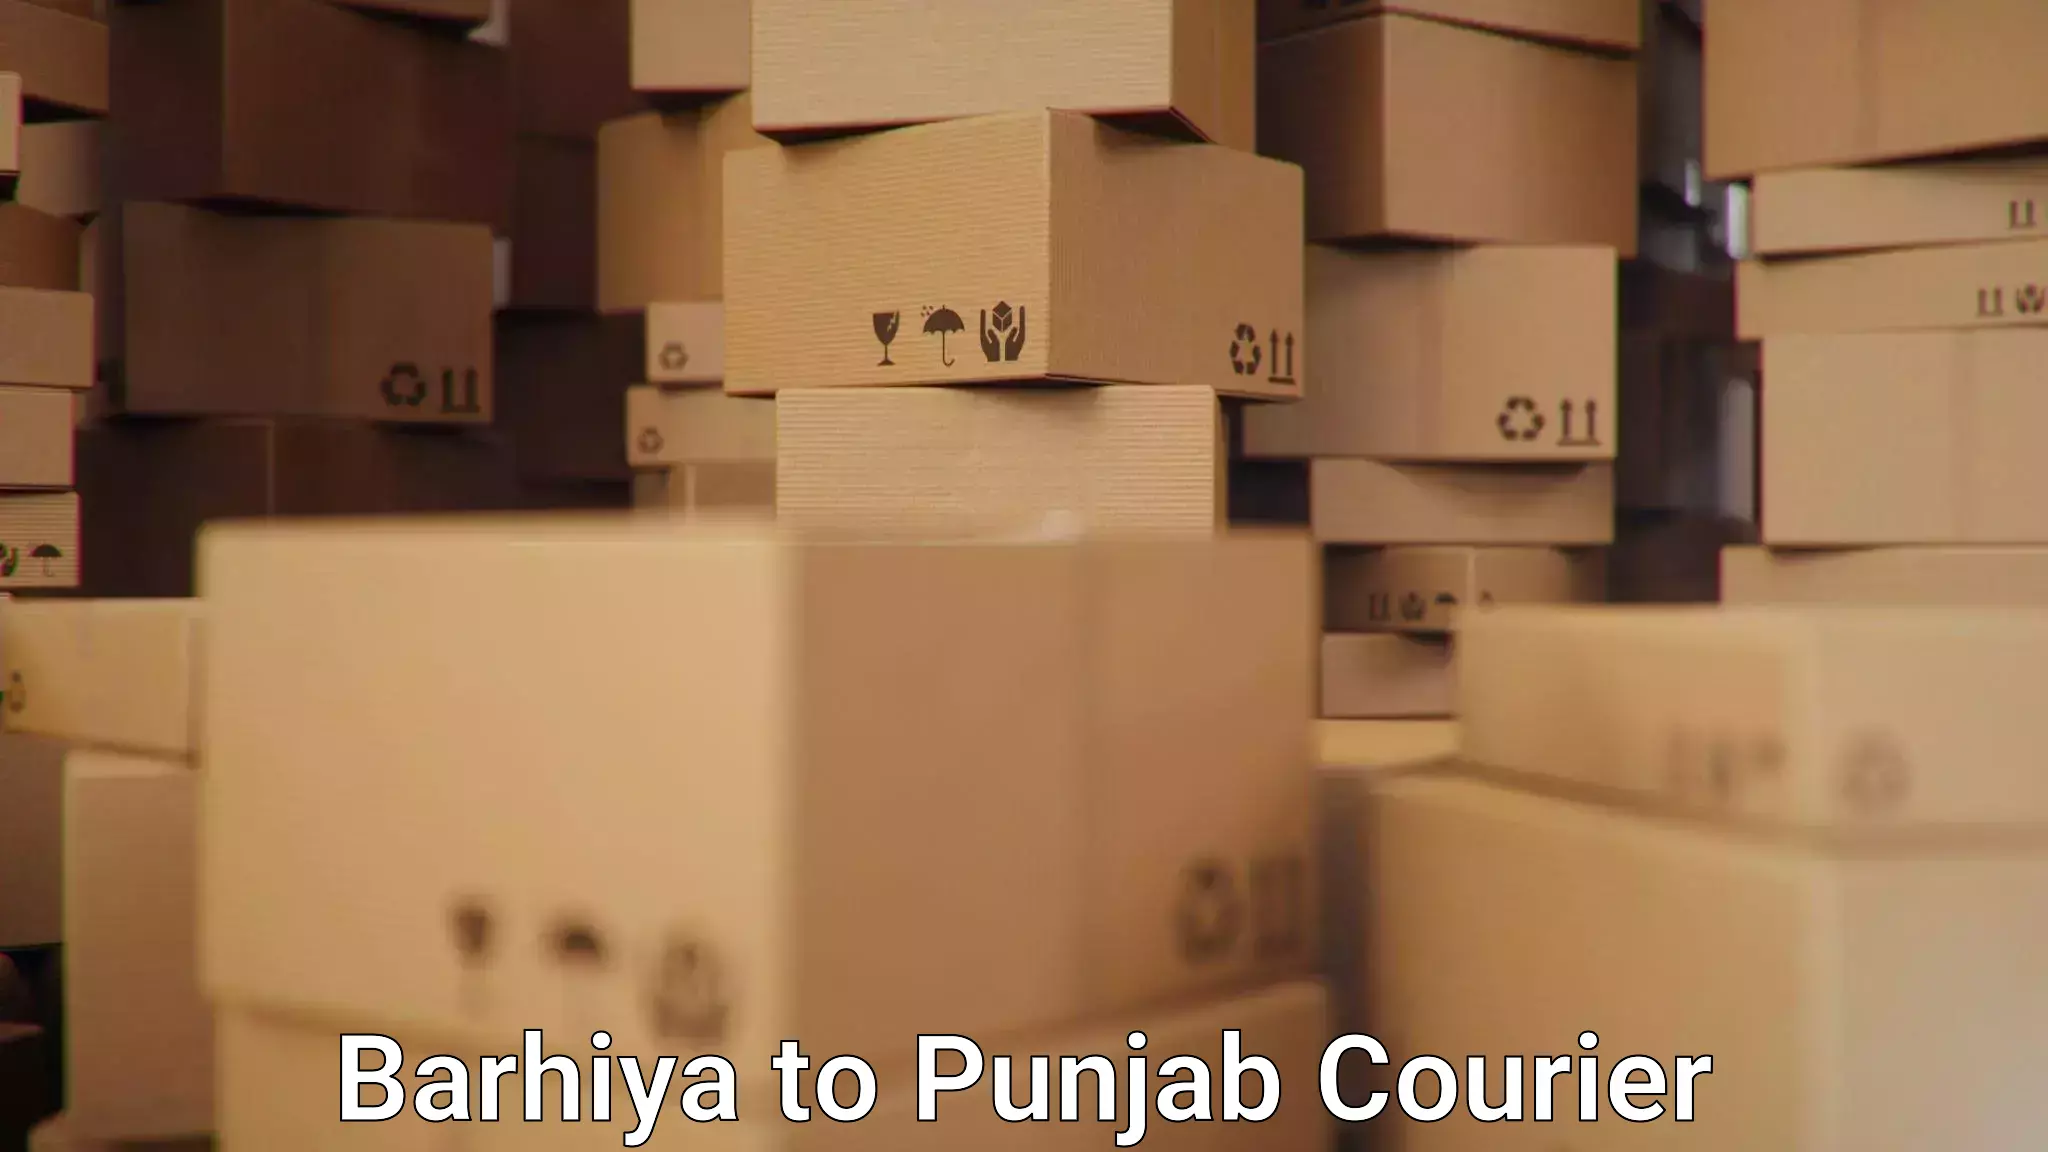 Courier app in Barhiya to Punjab